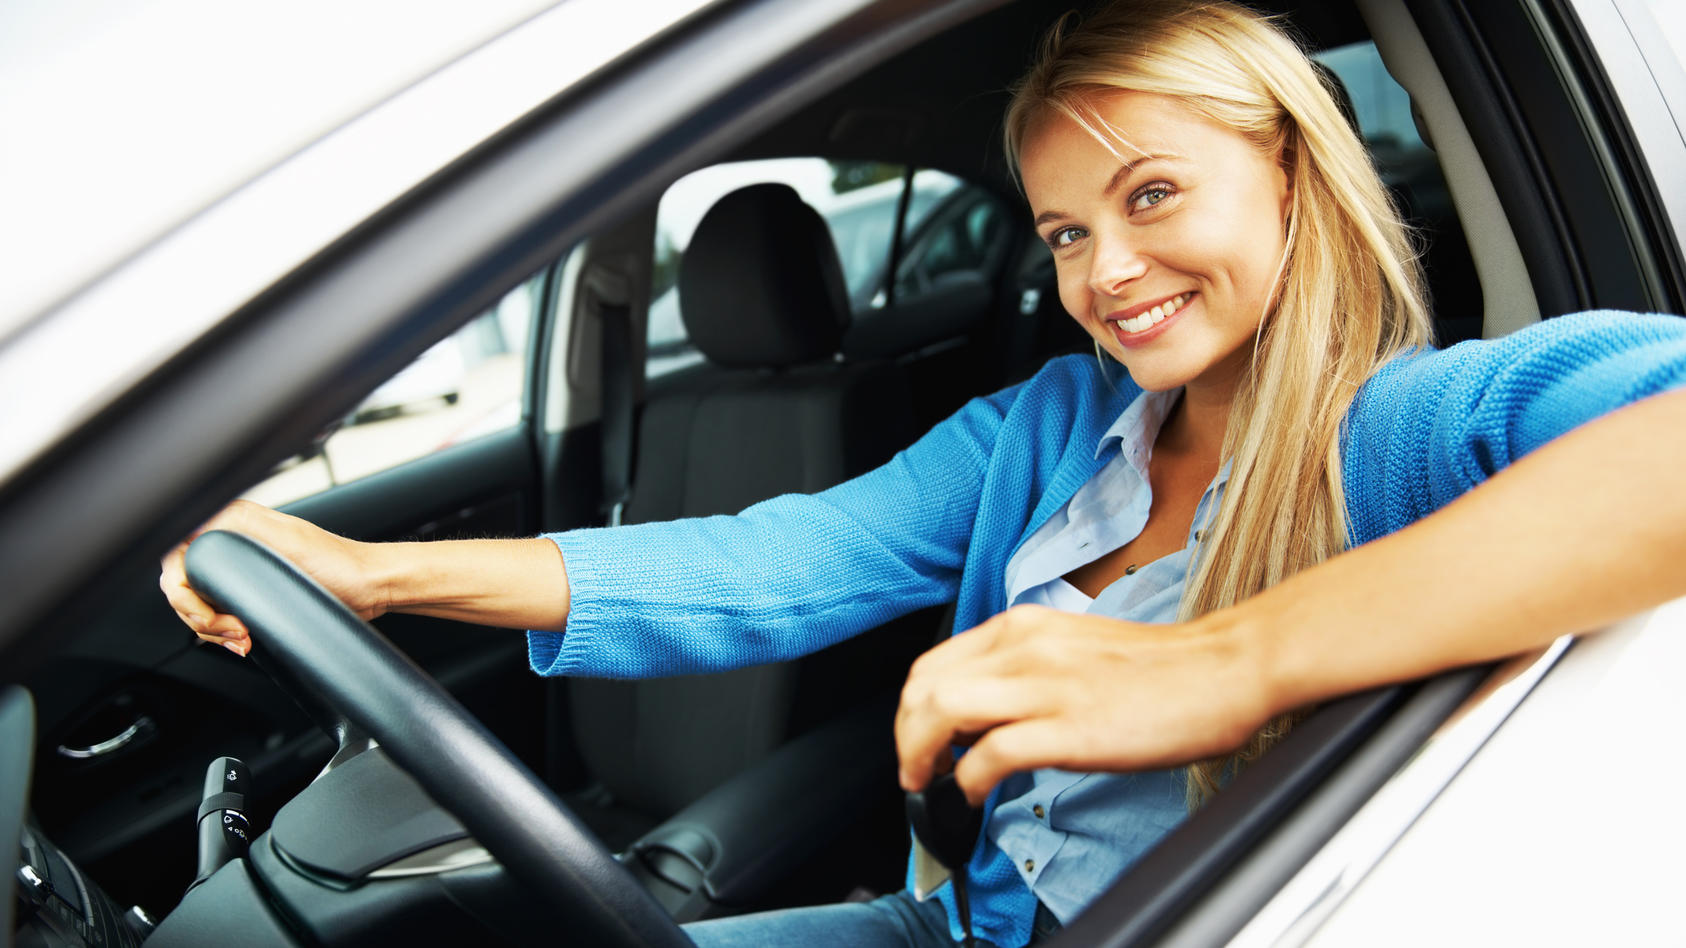 Autofahrer aufgepasst: Autoreifen, Führerschein und Co. - das